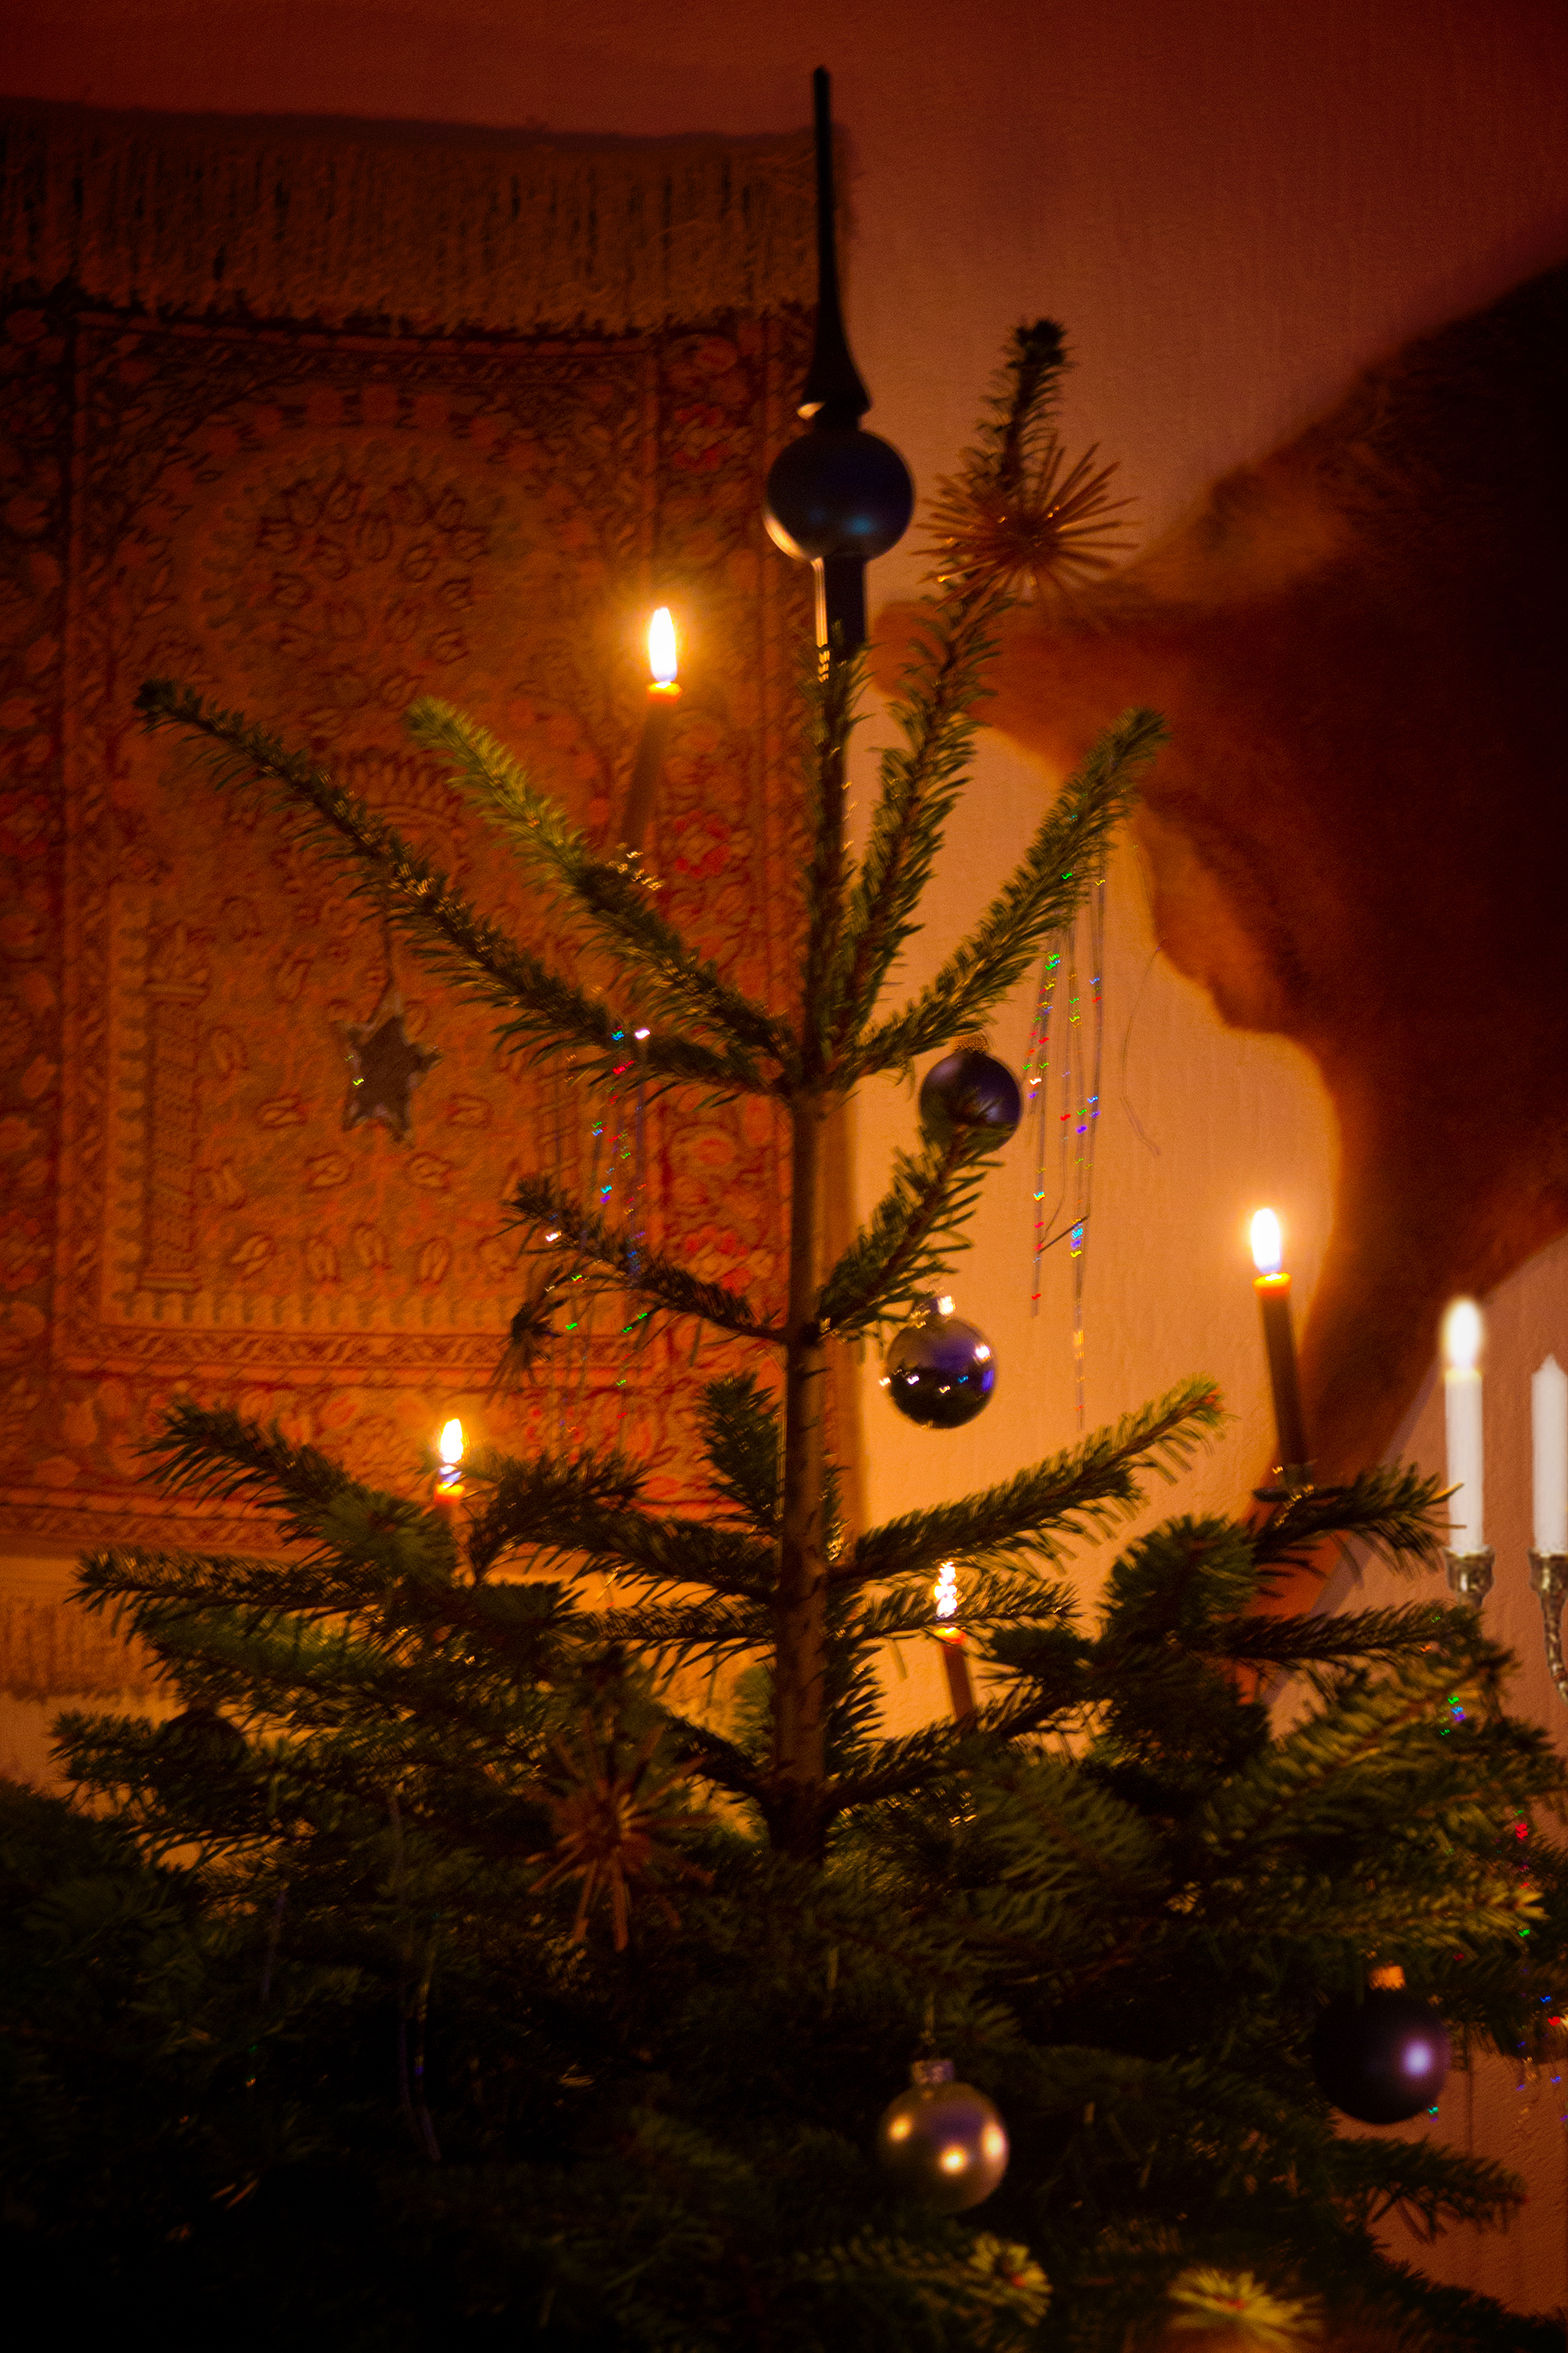 Weihnachtsbaum, Tanne, Schmuck, Gebetsteppich, Minora, Kerzen, Sterne, Winterfeste,